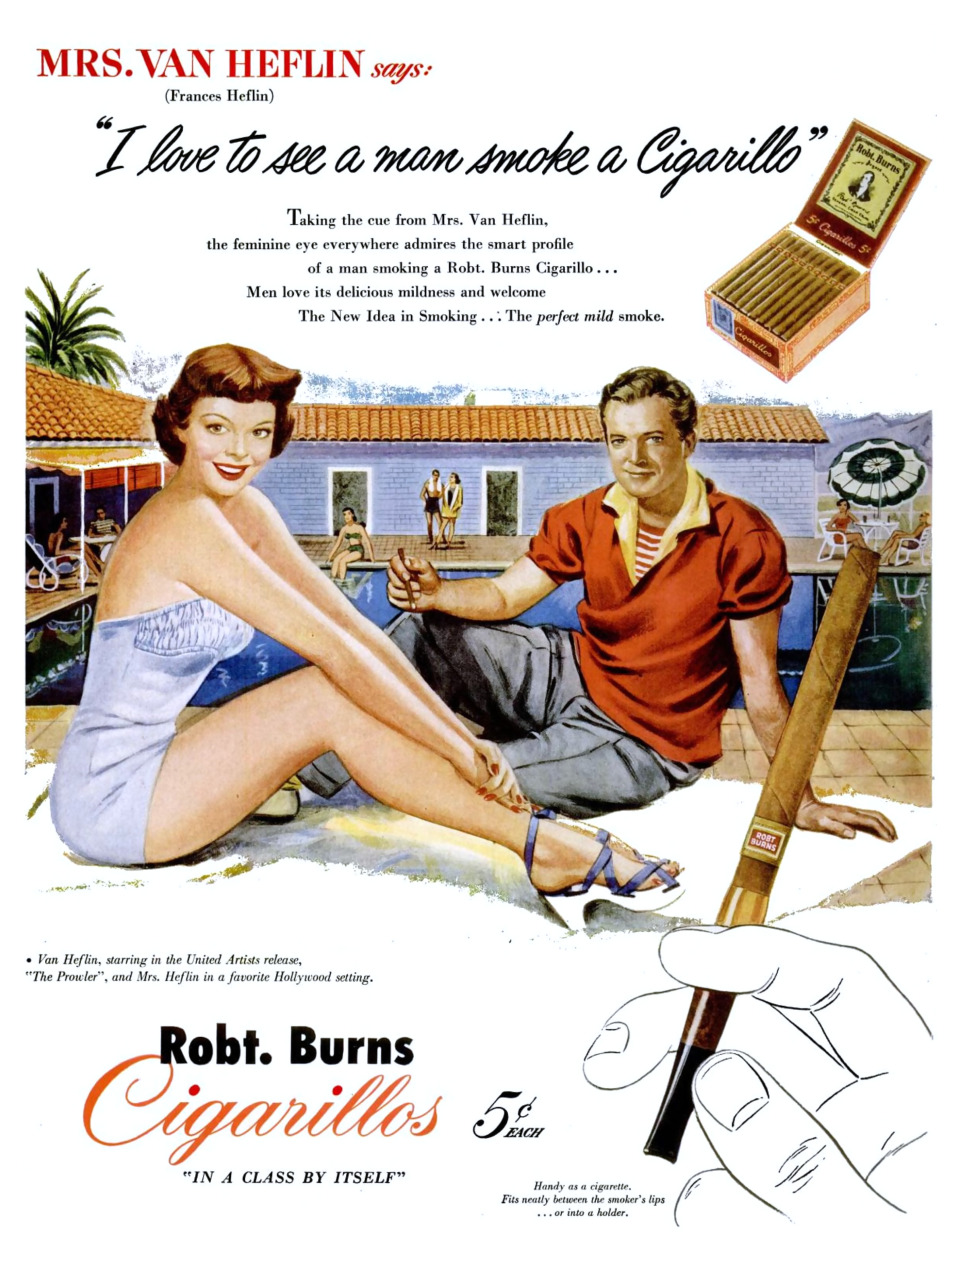 Robt. Burns Cigarillos featuring Mr. and Mrs. Van Heflin - 1951